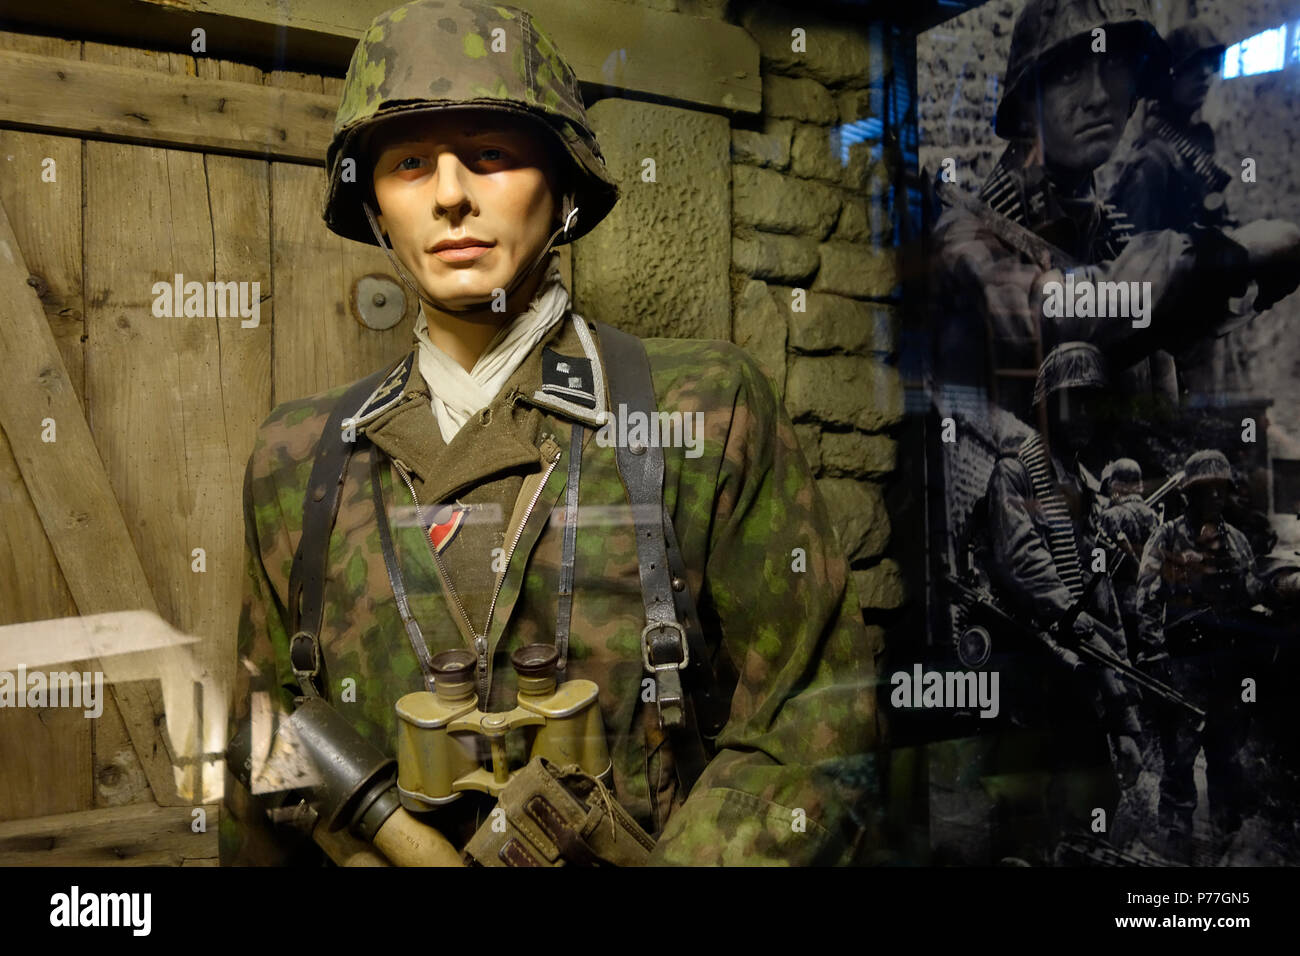 Soldat allemand WWII in camouflage battledress, Overlord Museum près de Omaha Beach à propos de WW2 D-Day, Colleville-sur-Mer, Normandie, France Banque D'Images